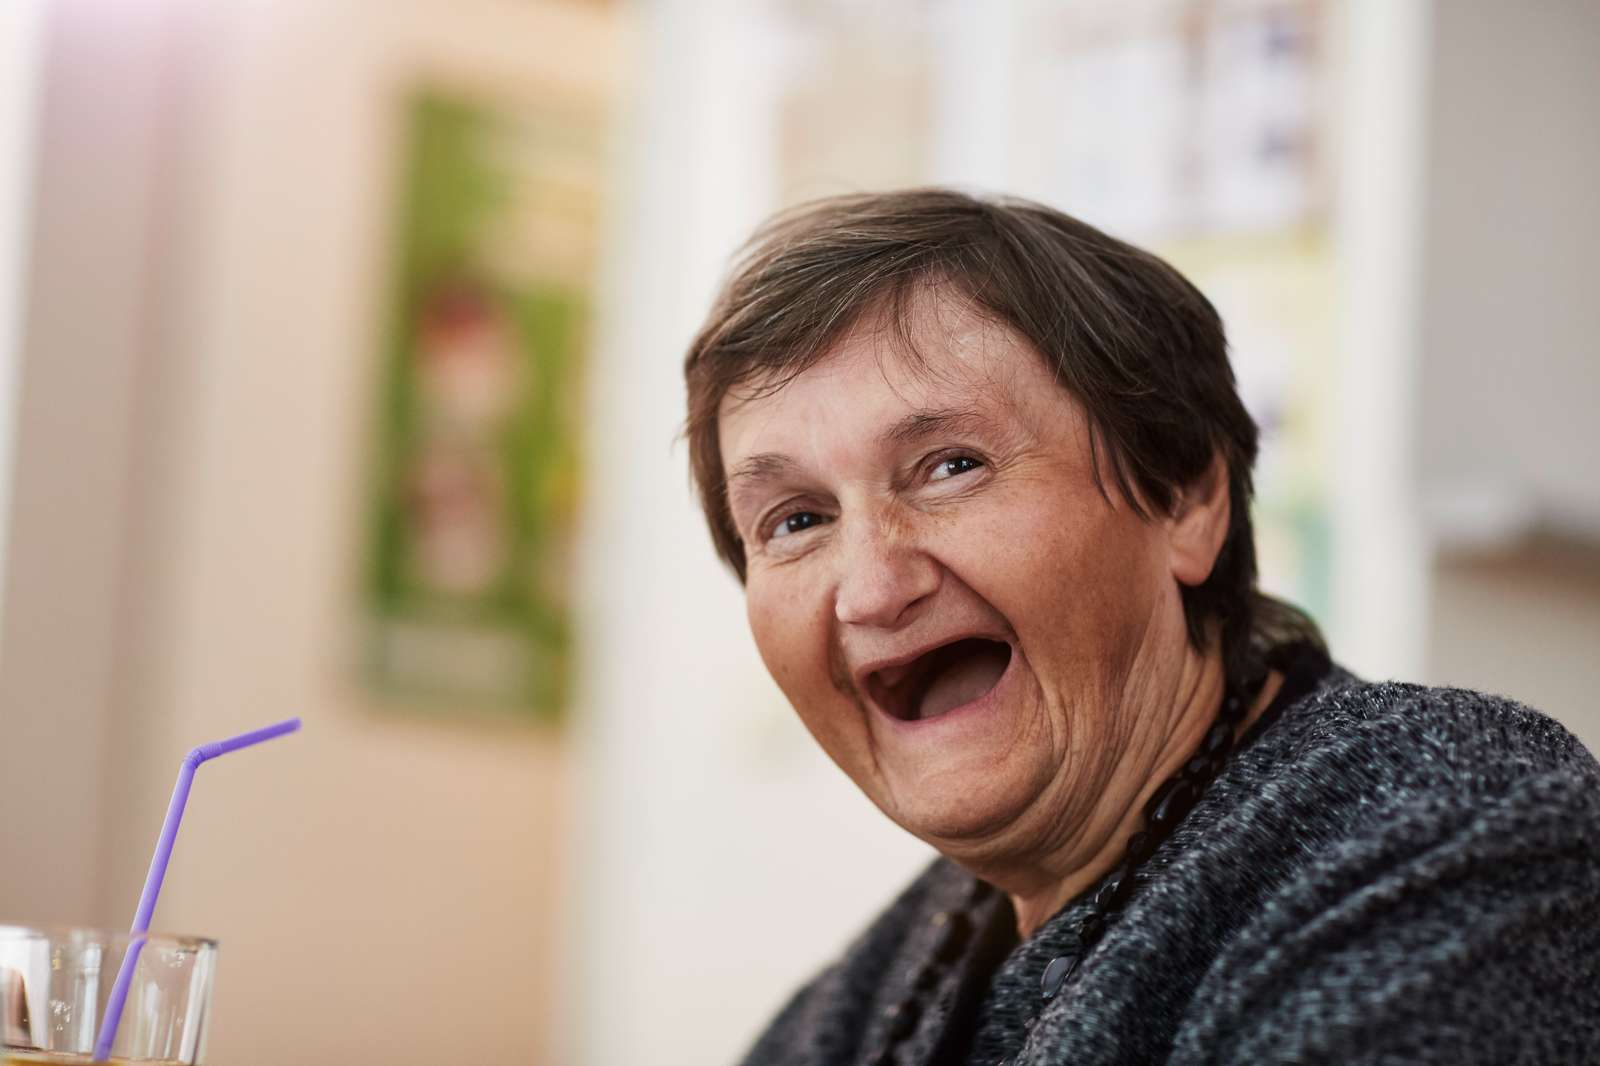 Eine ältere Dame lacht